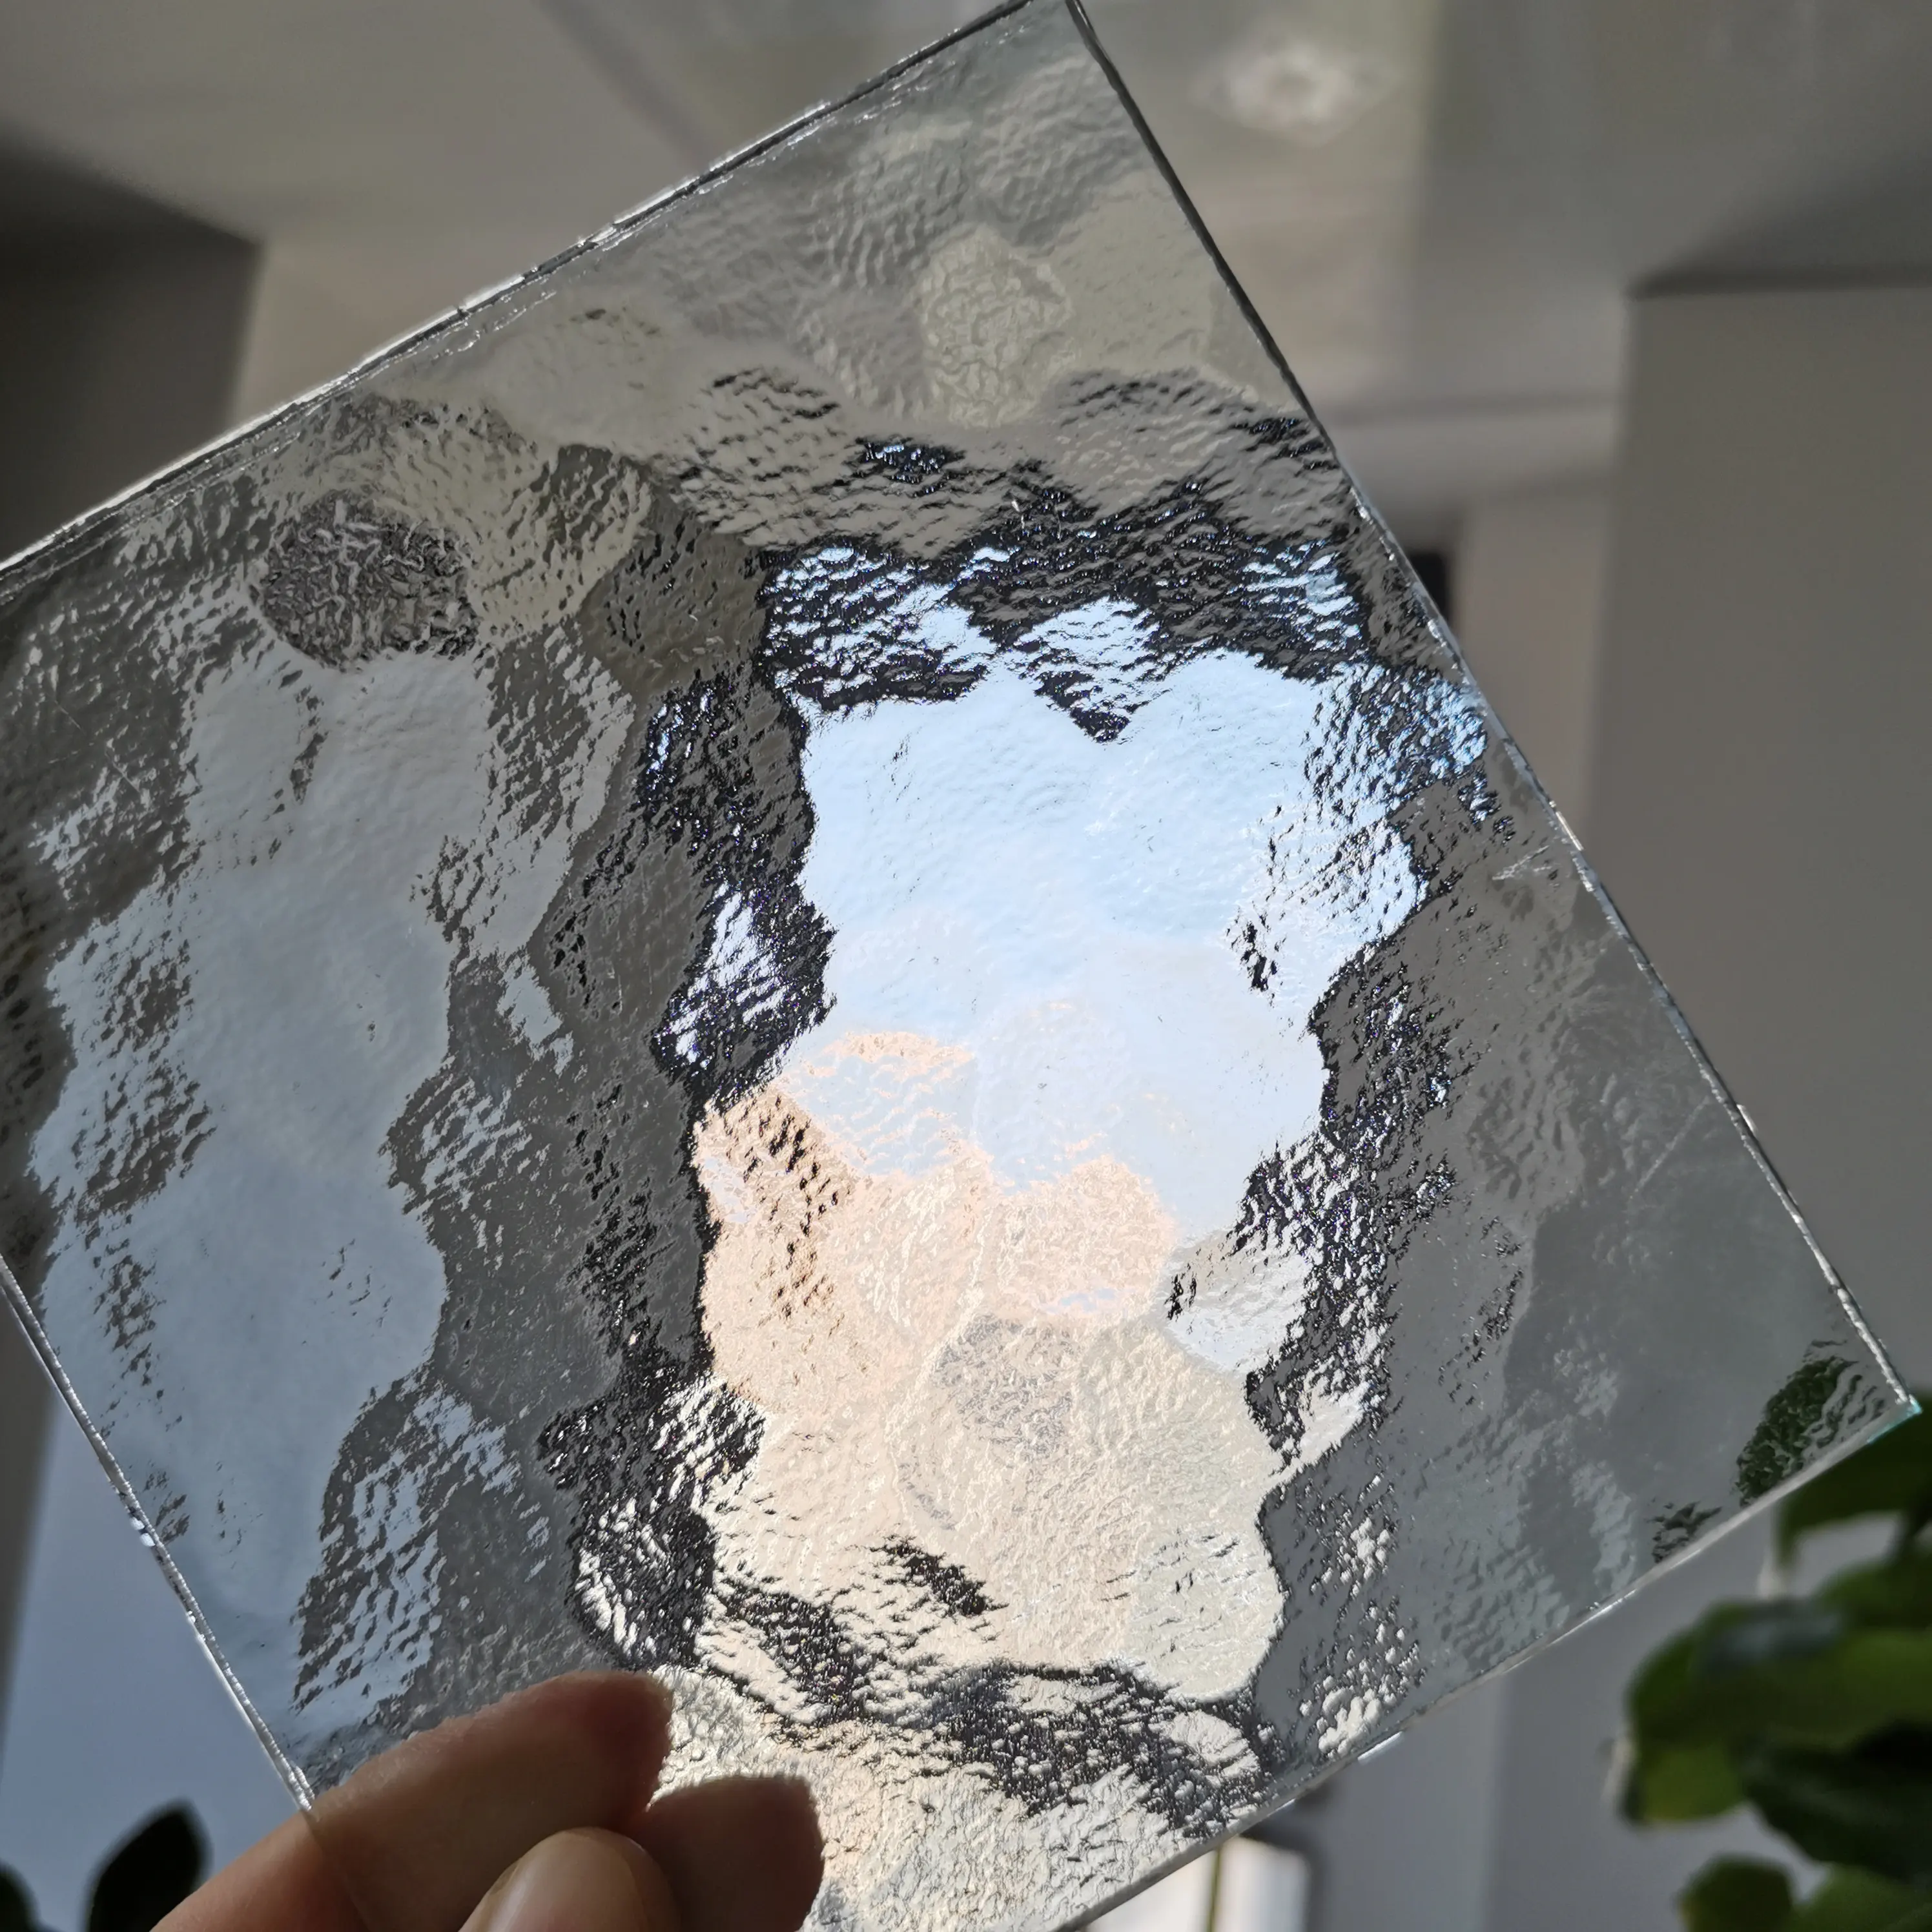 テーブルランプボックストレイ水波状テクスチャガラスシャワーパーティション用の透明なアクアライト模様のガラス